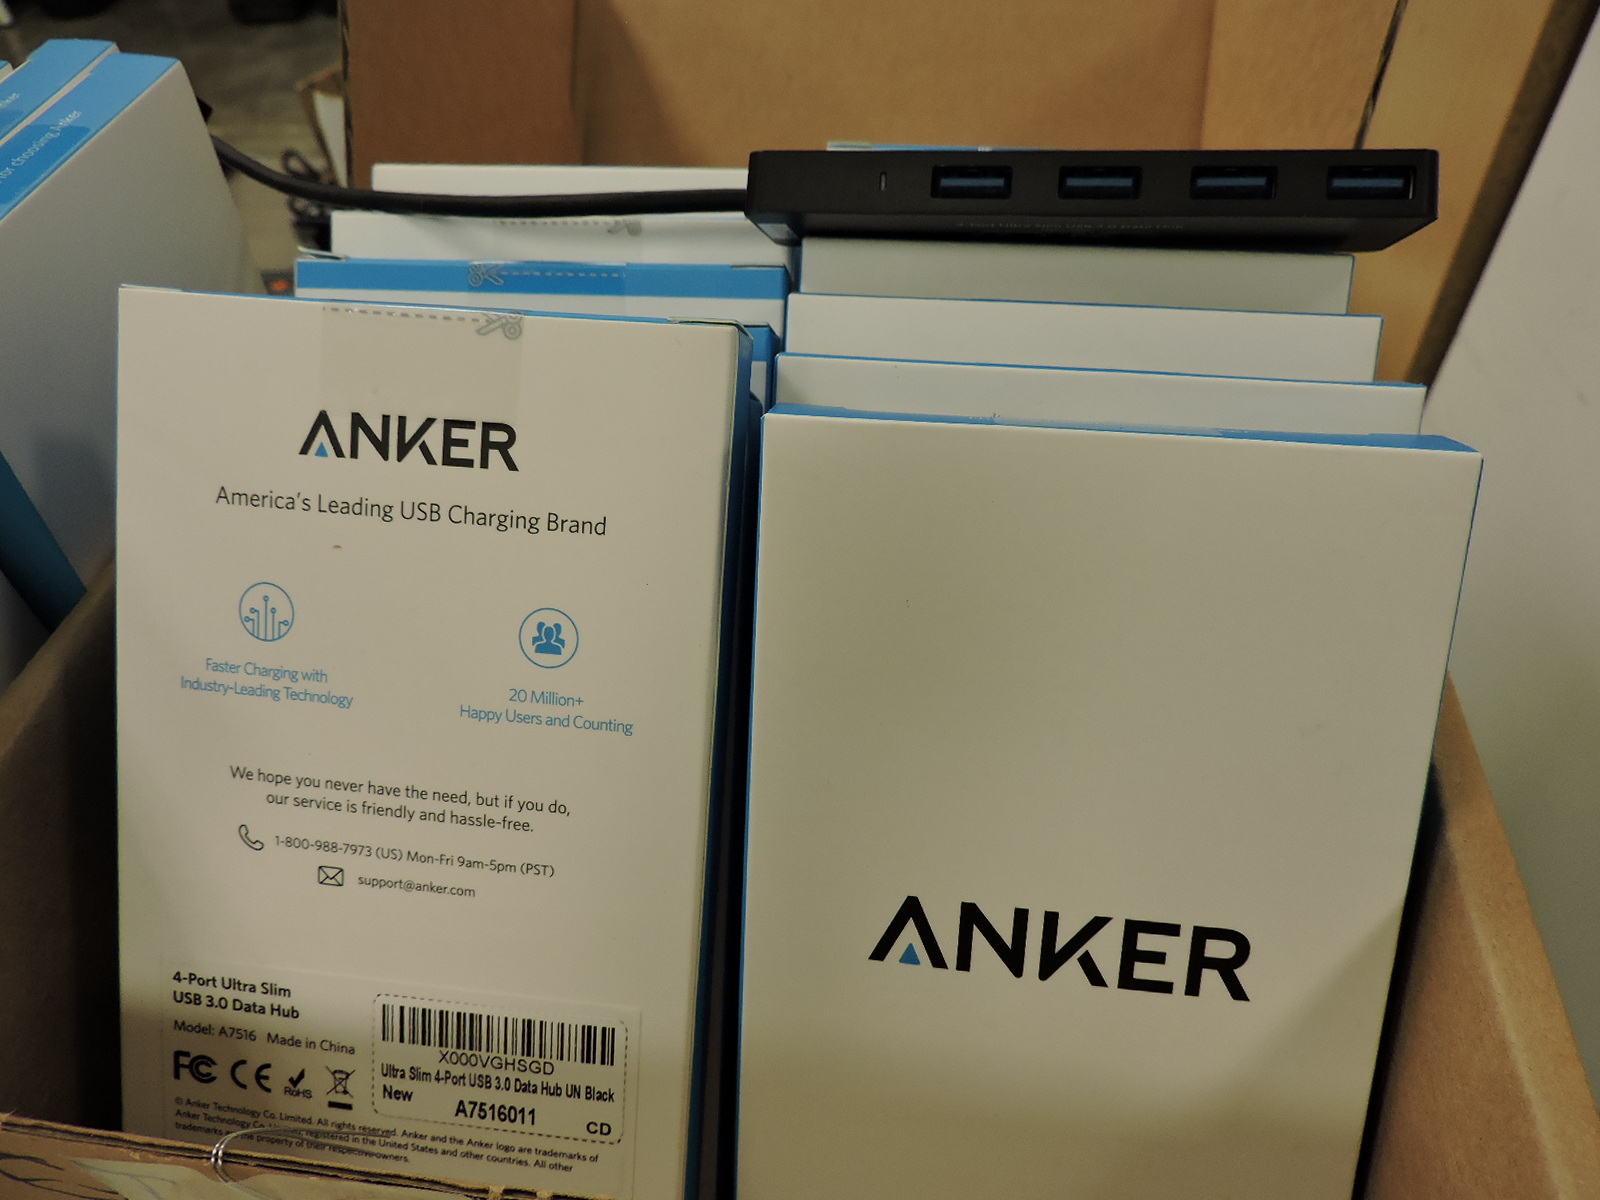 ANKER Brand - Ultra Slim 4-Port USB 3.0 Data Hub